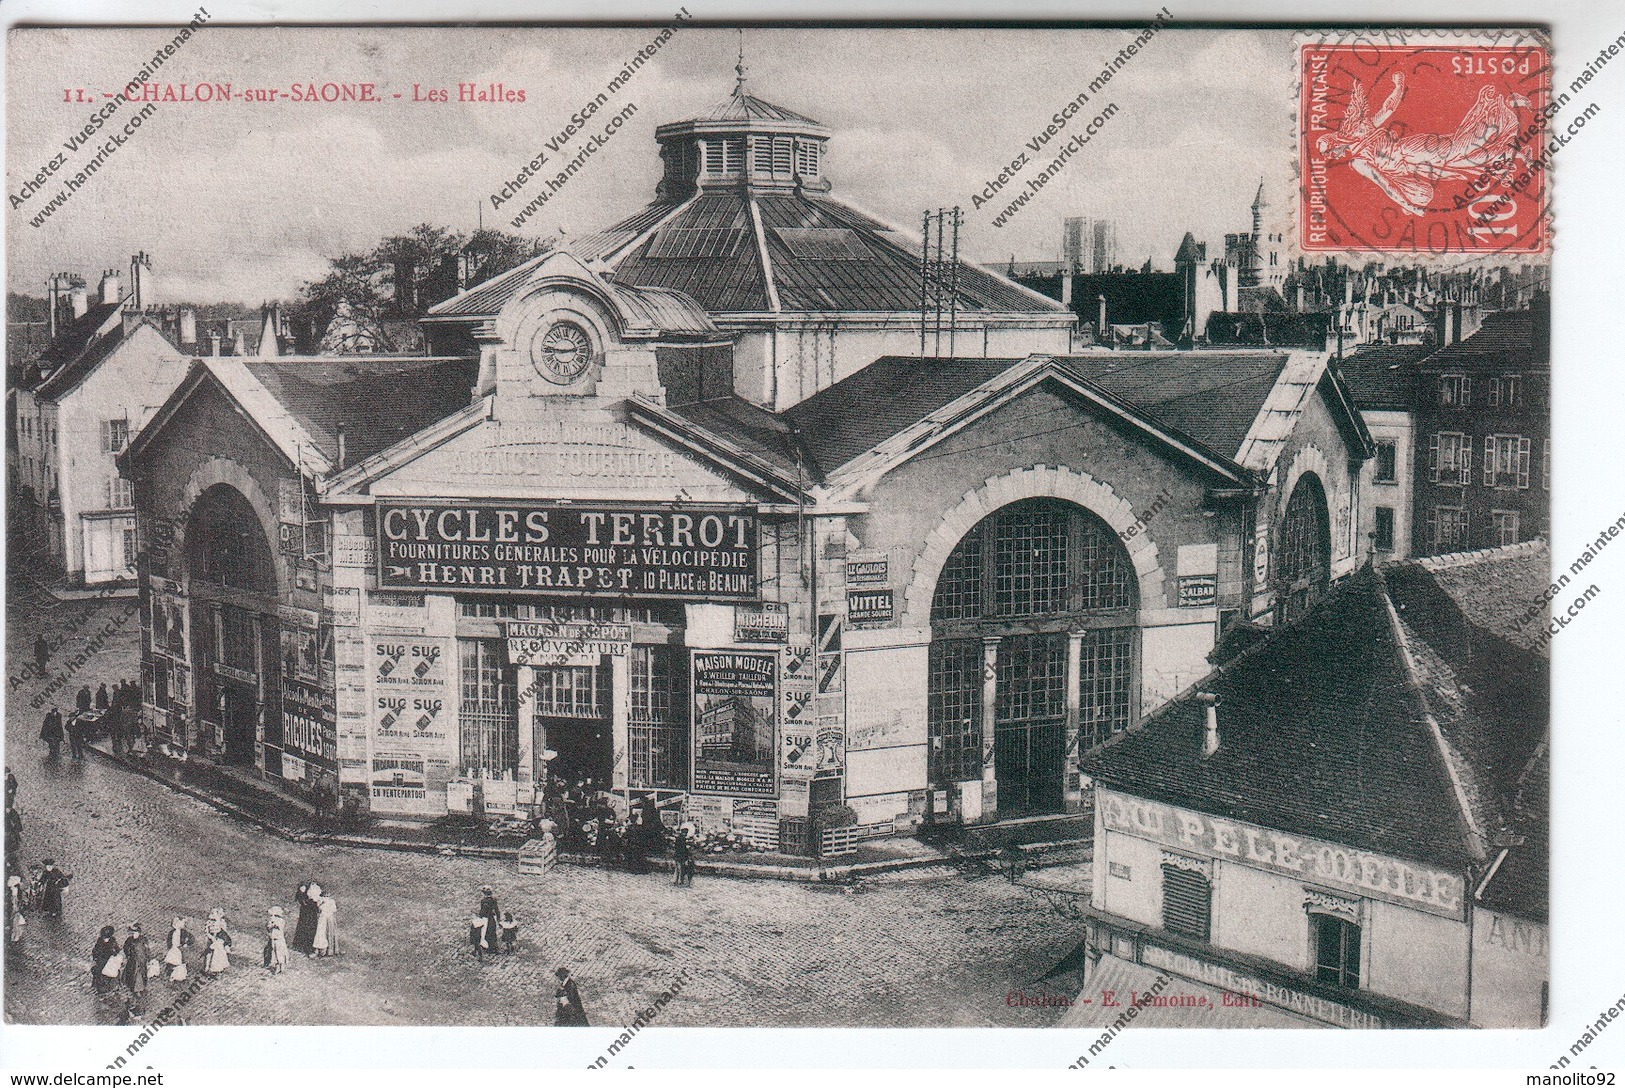 RARE CPA CHALON SUR SAONE (71) : Les Halles Publicité Cycles TERROT Henri TRAPET 10 Place De Beaune - Chalon Sur Saone